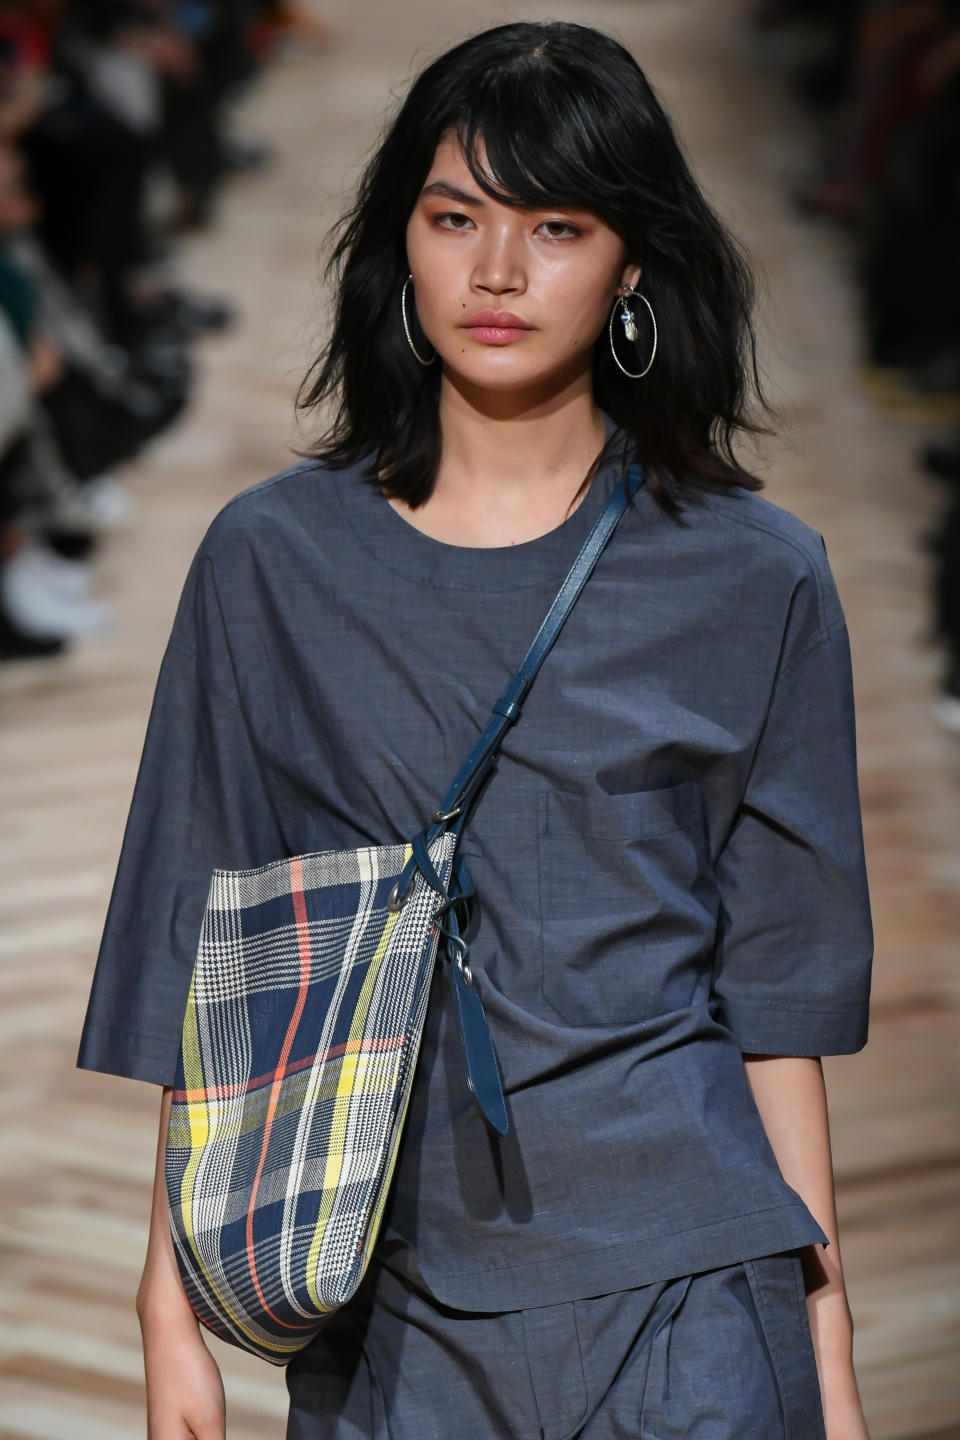 Model Rina Fukushi glaubt, dass die Gesellschaft in Japan langsam offener werde. (Bild: Getty Images)